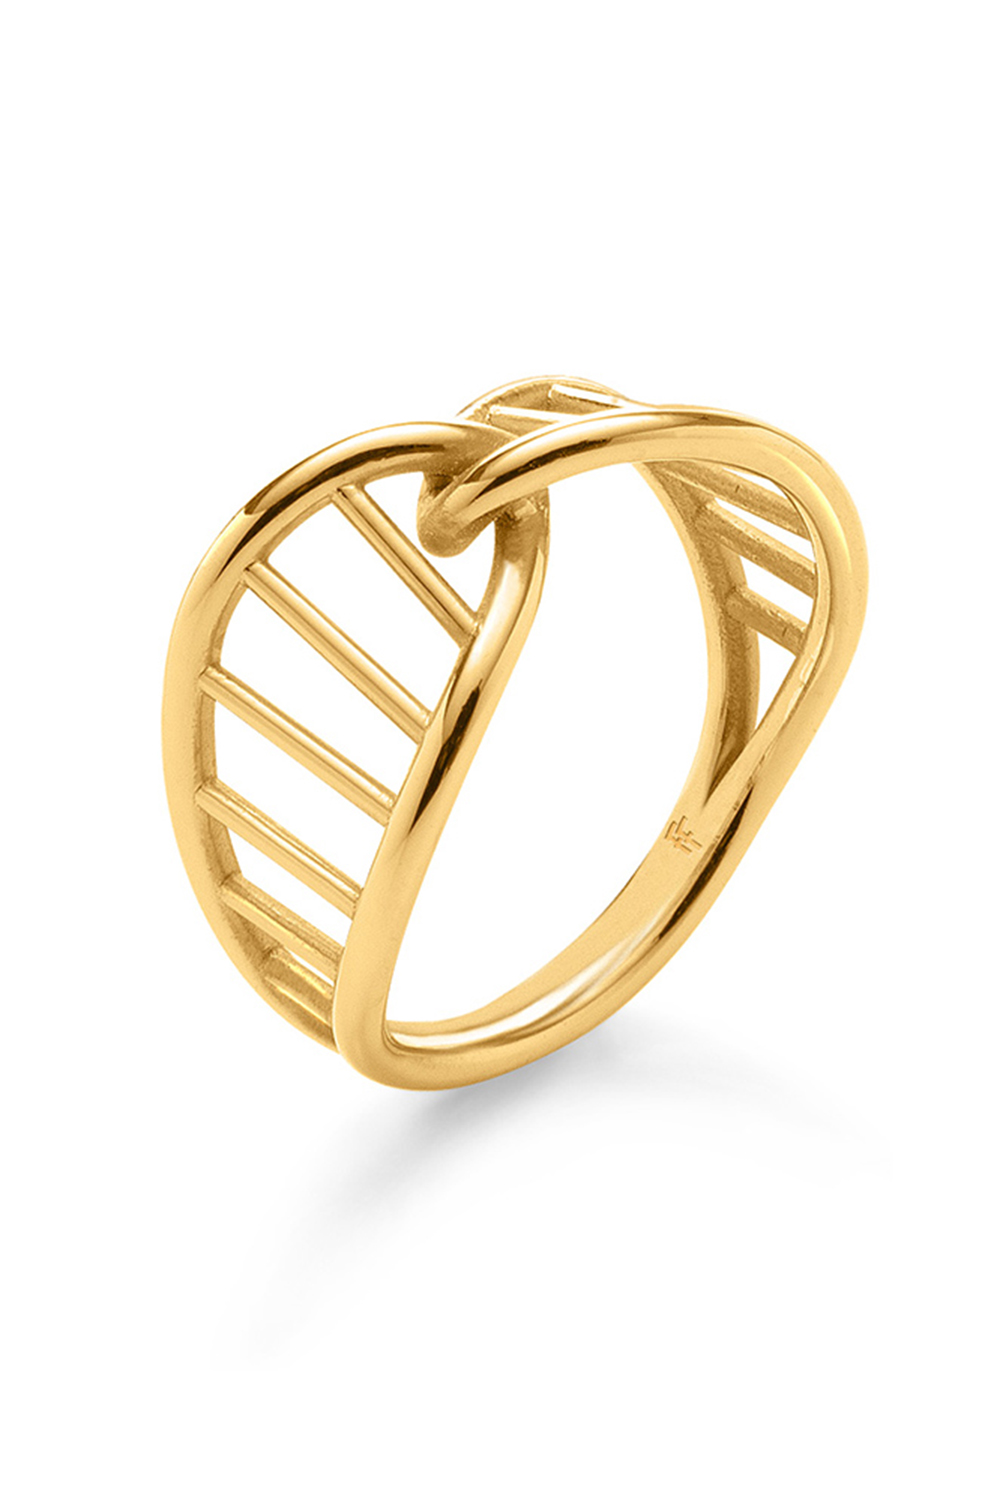 FOLLI FOLLIE – Γυναικείo ασημένιο δαχτυλίδι FOLLI FOLLIE STYLE DNA χρυσό 1R20S001Y